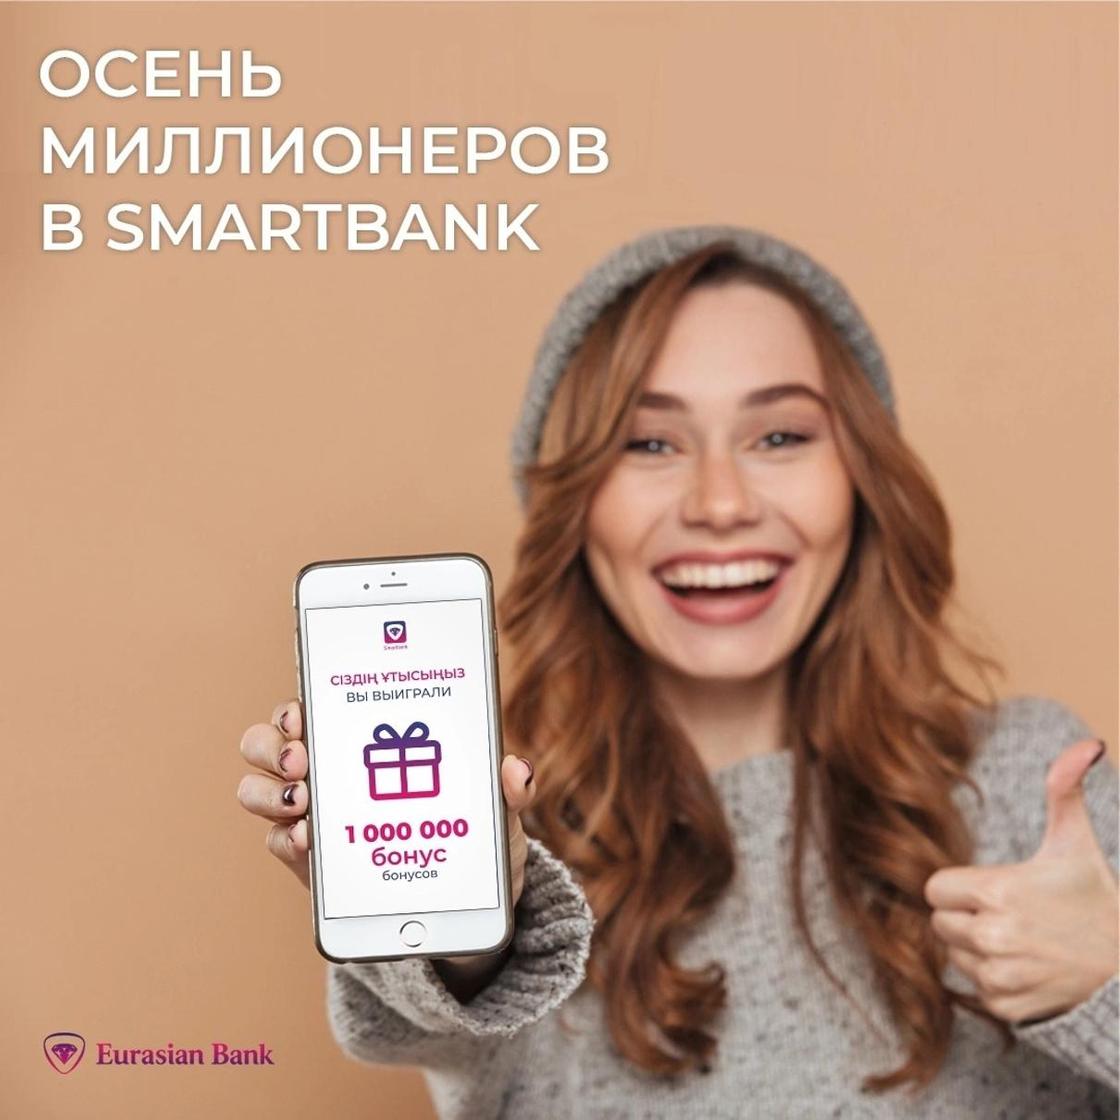 Казахстанский банк подарит клиентам 17 млн бонусов за скачивание мобильного приложения